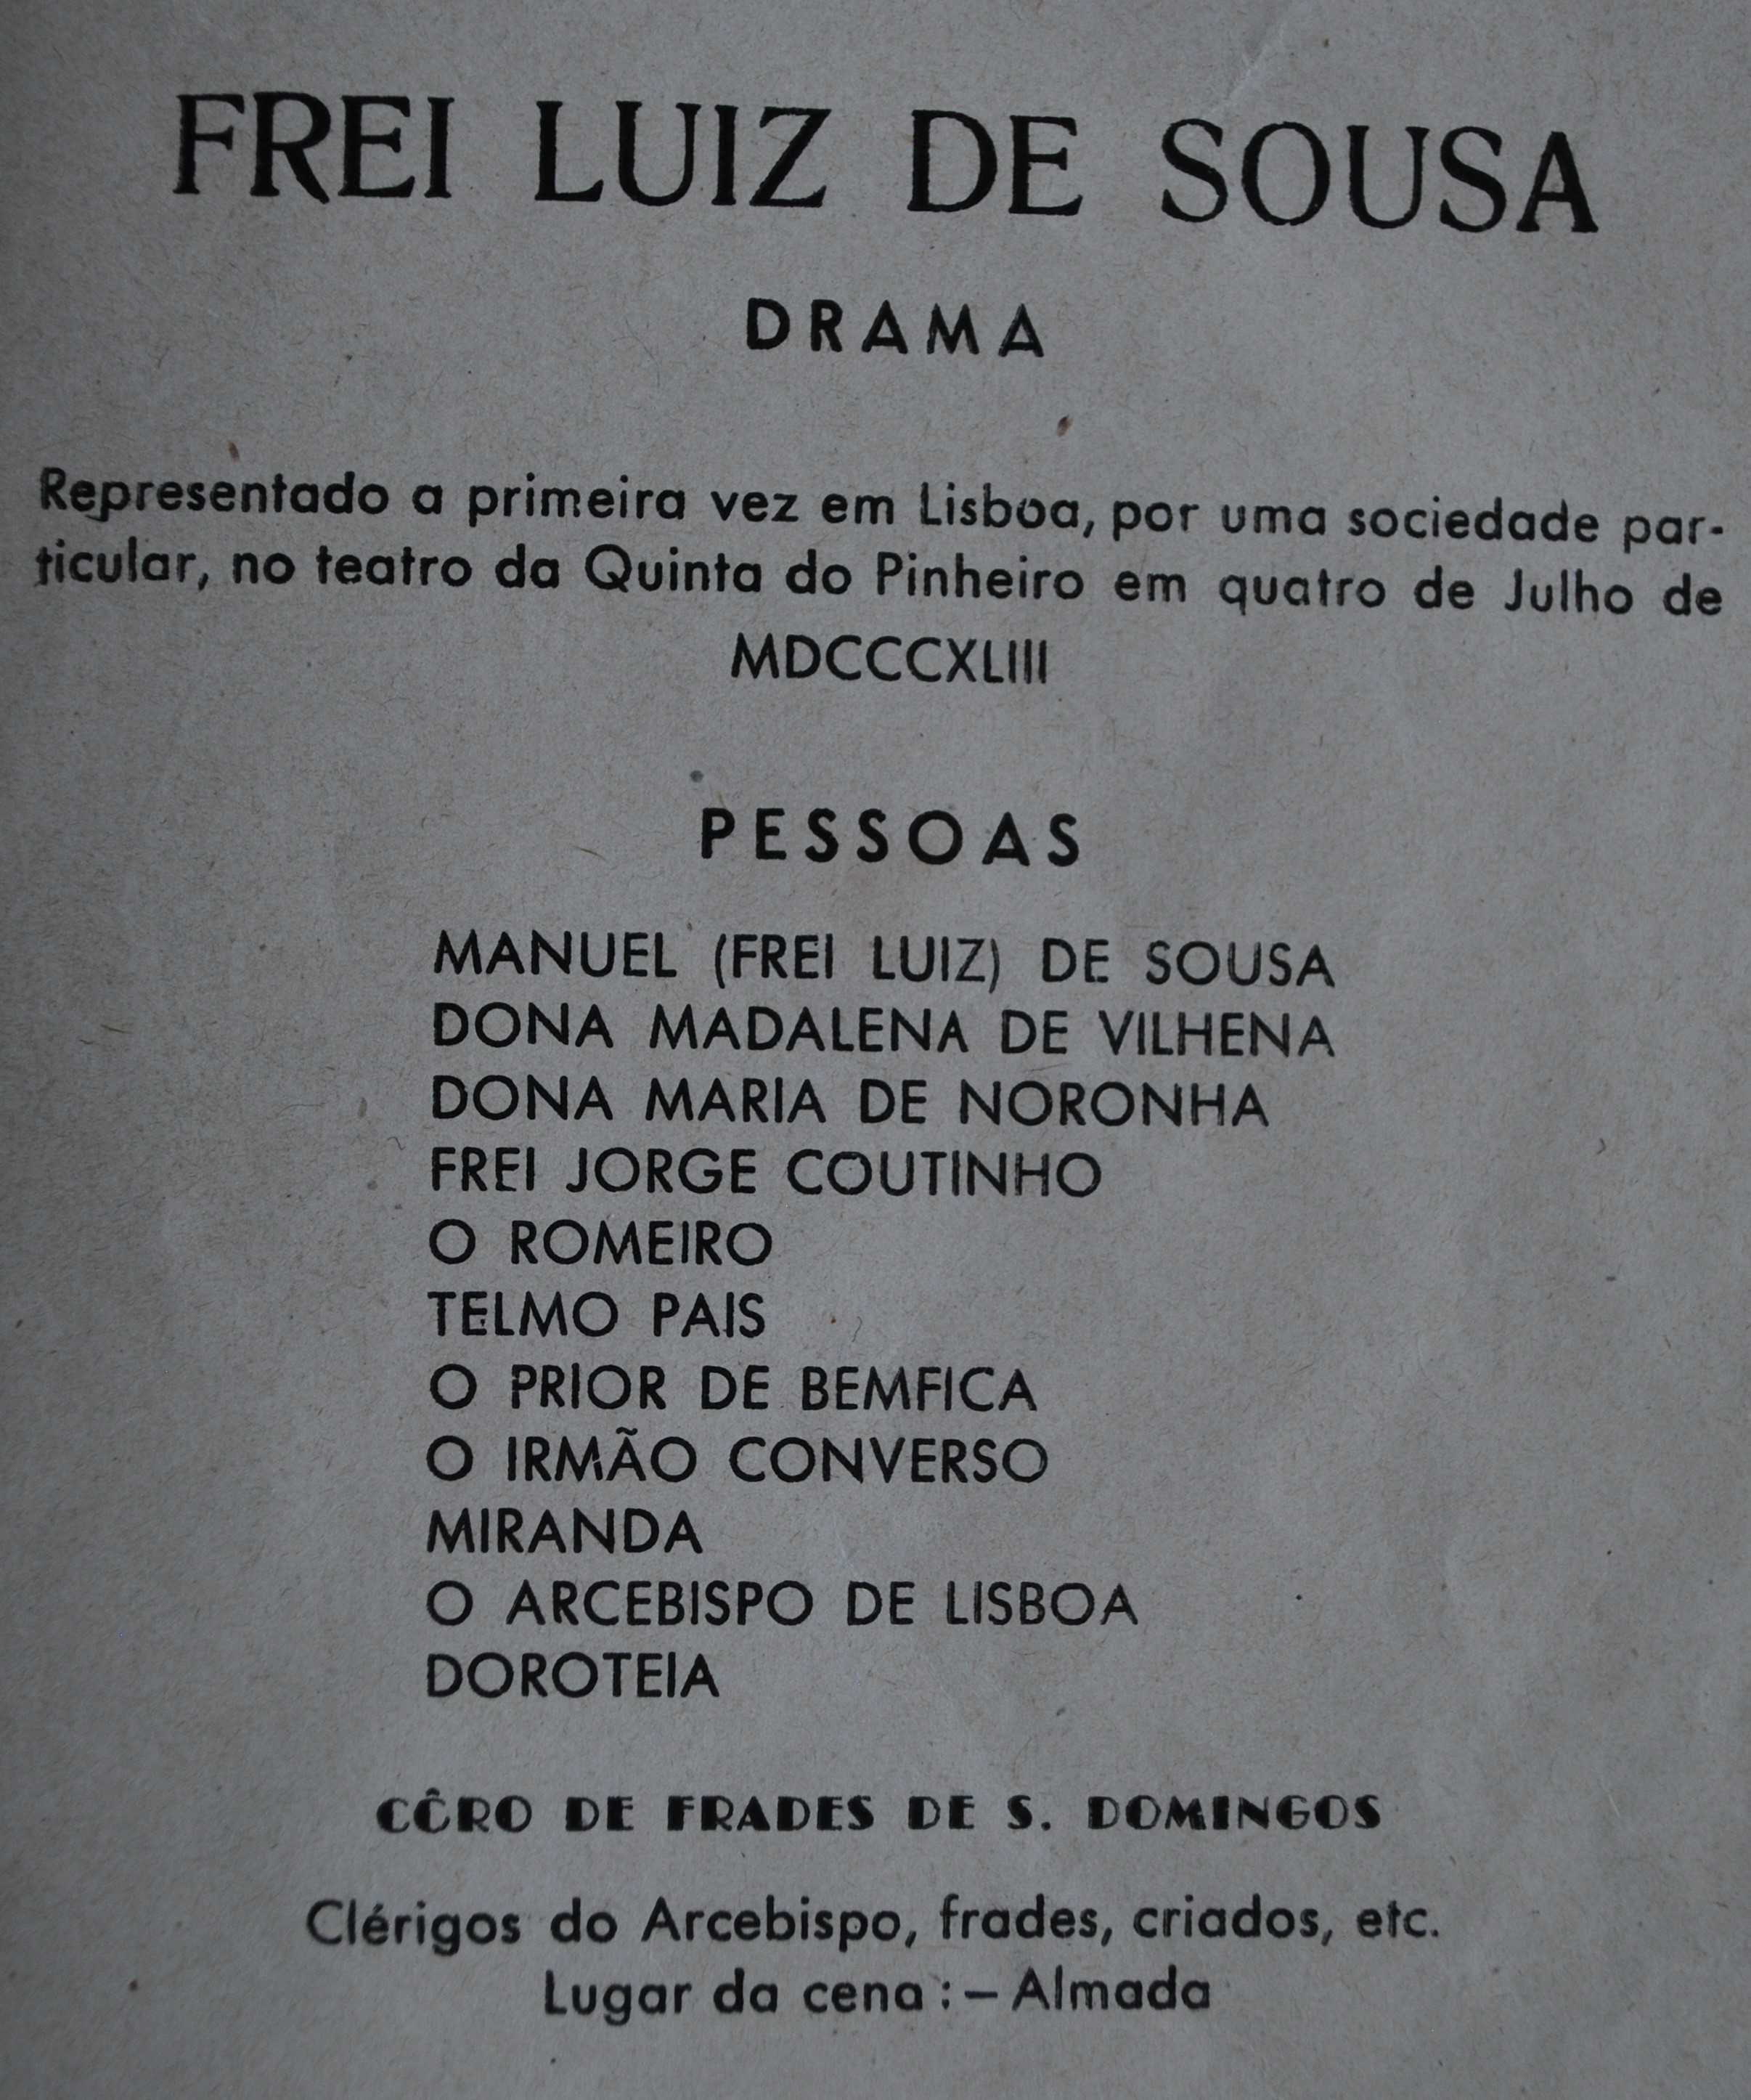 Frei Luís de Sousa de Almeida Garrett (Ano de Edição 1944)